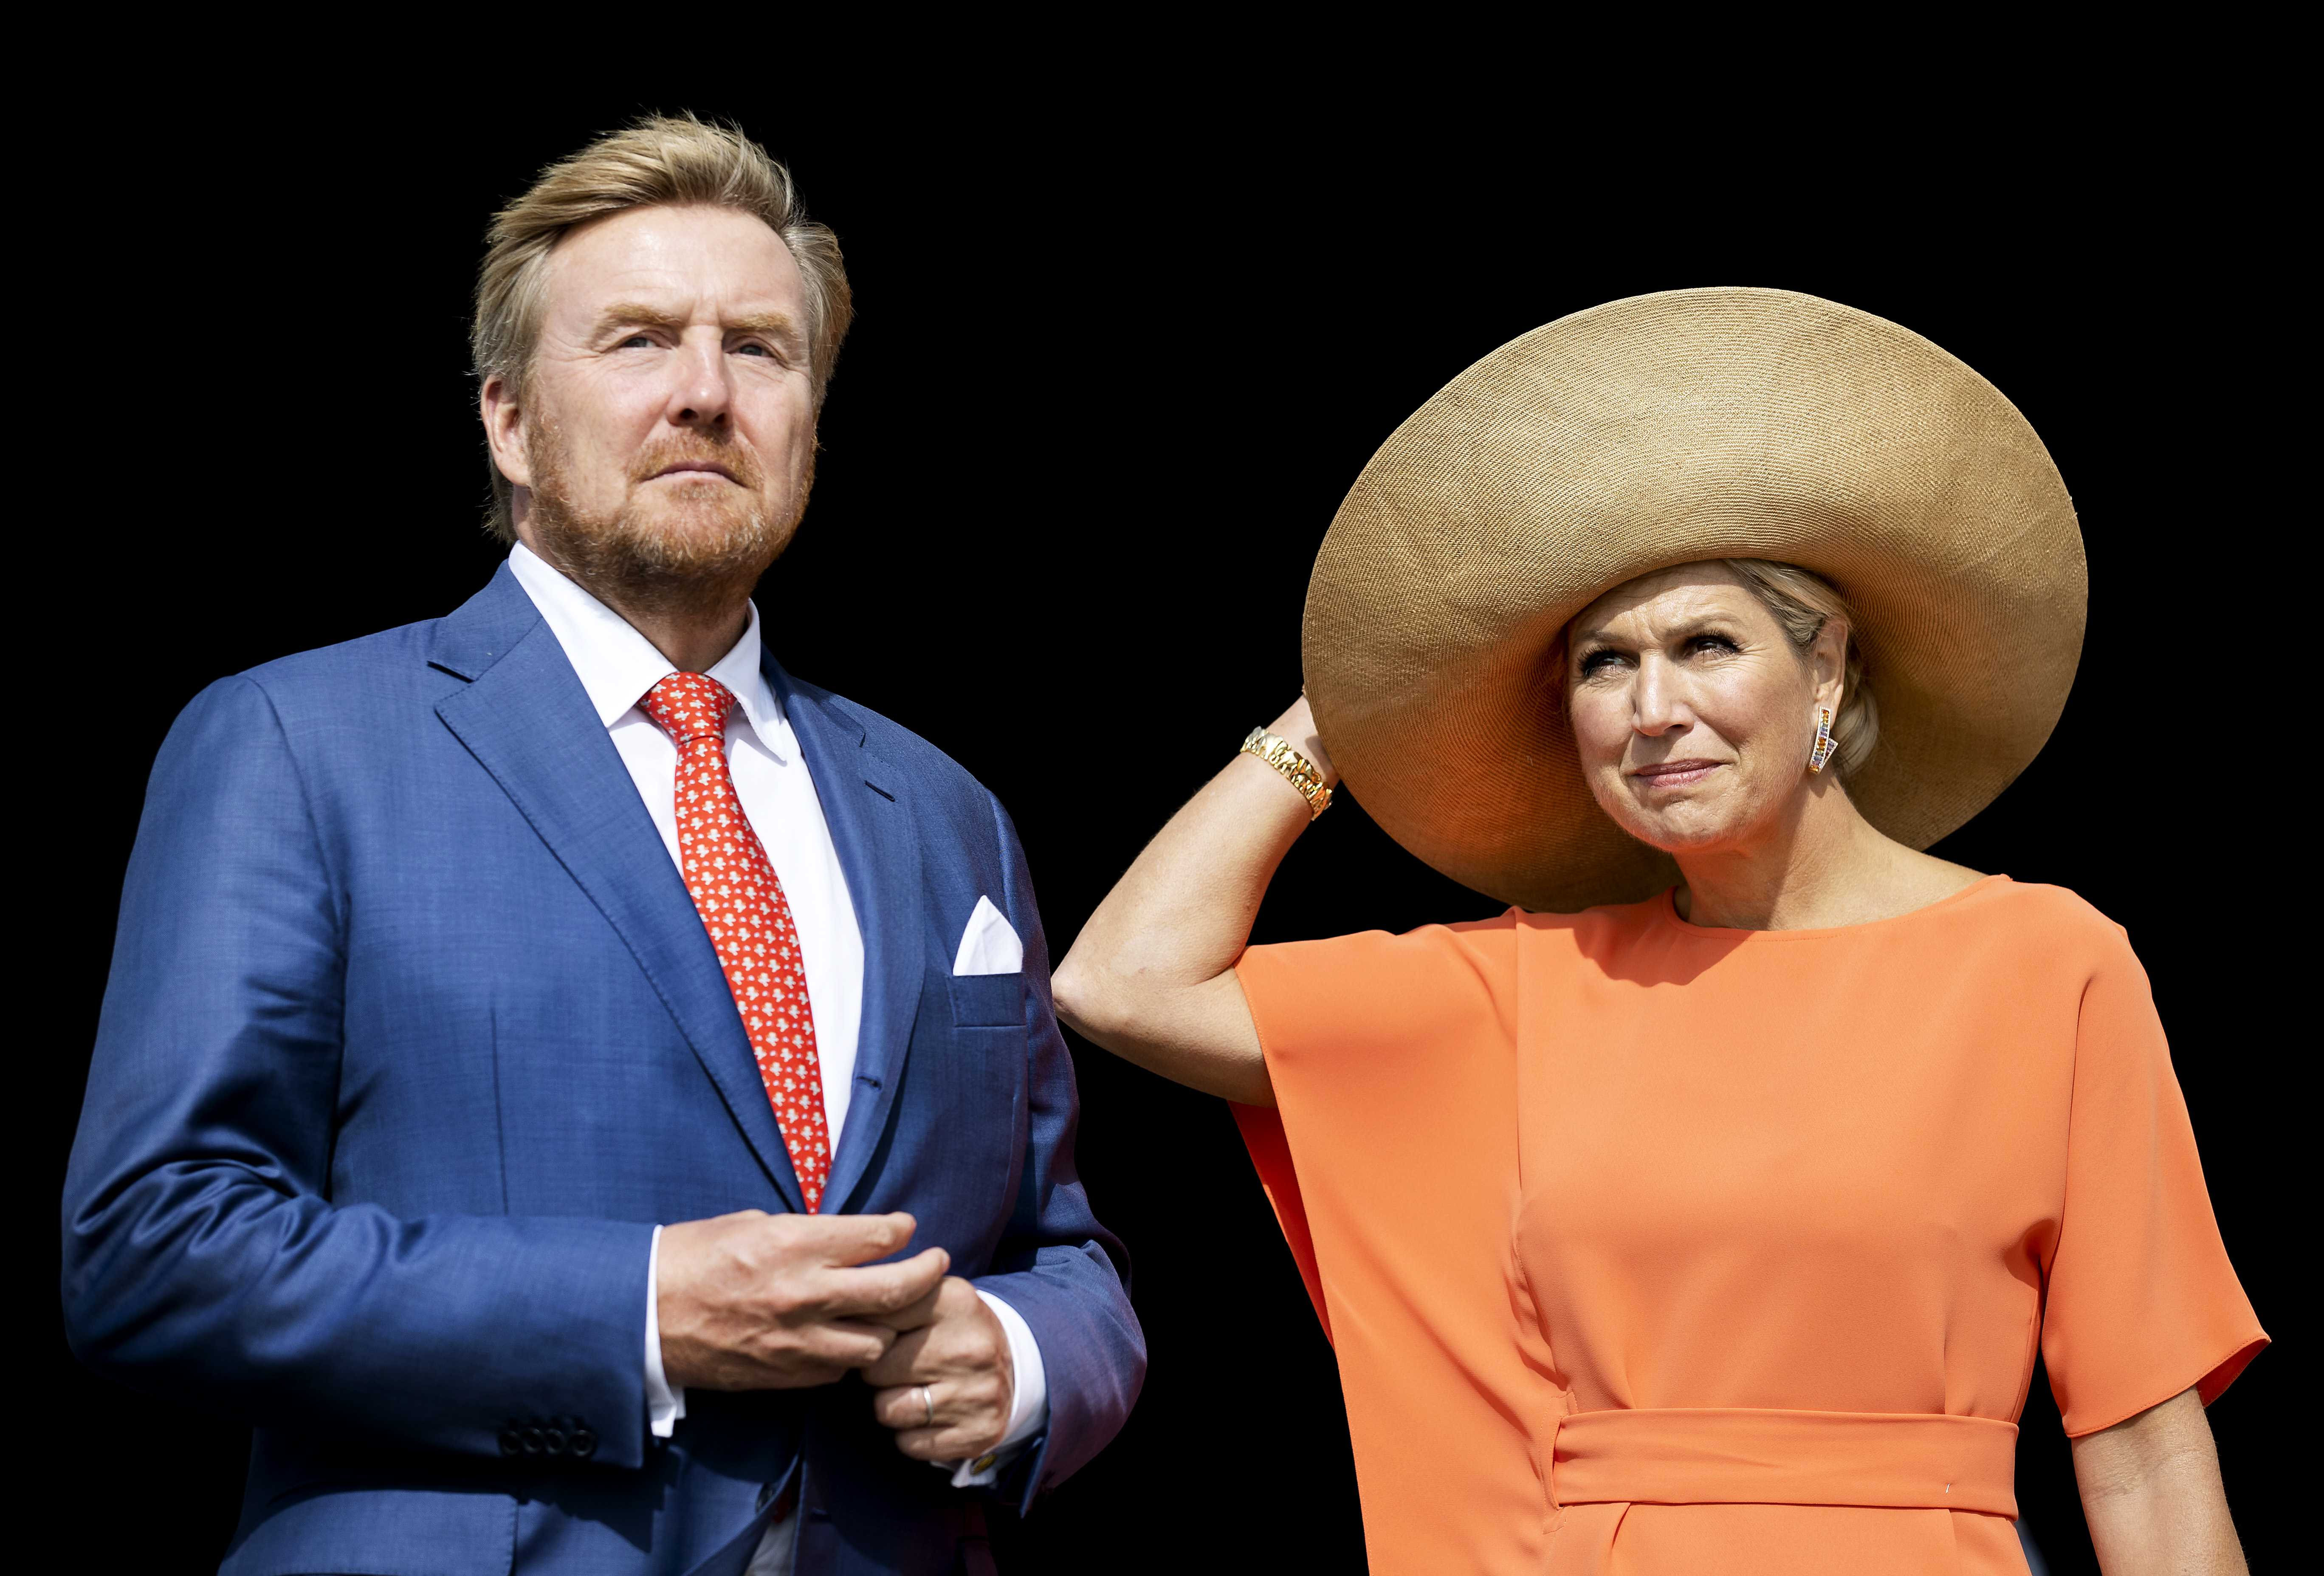 König Willem-Alexander und Königin Maxima